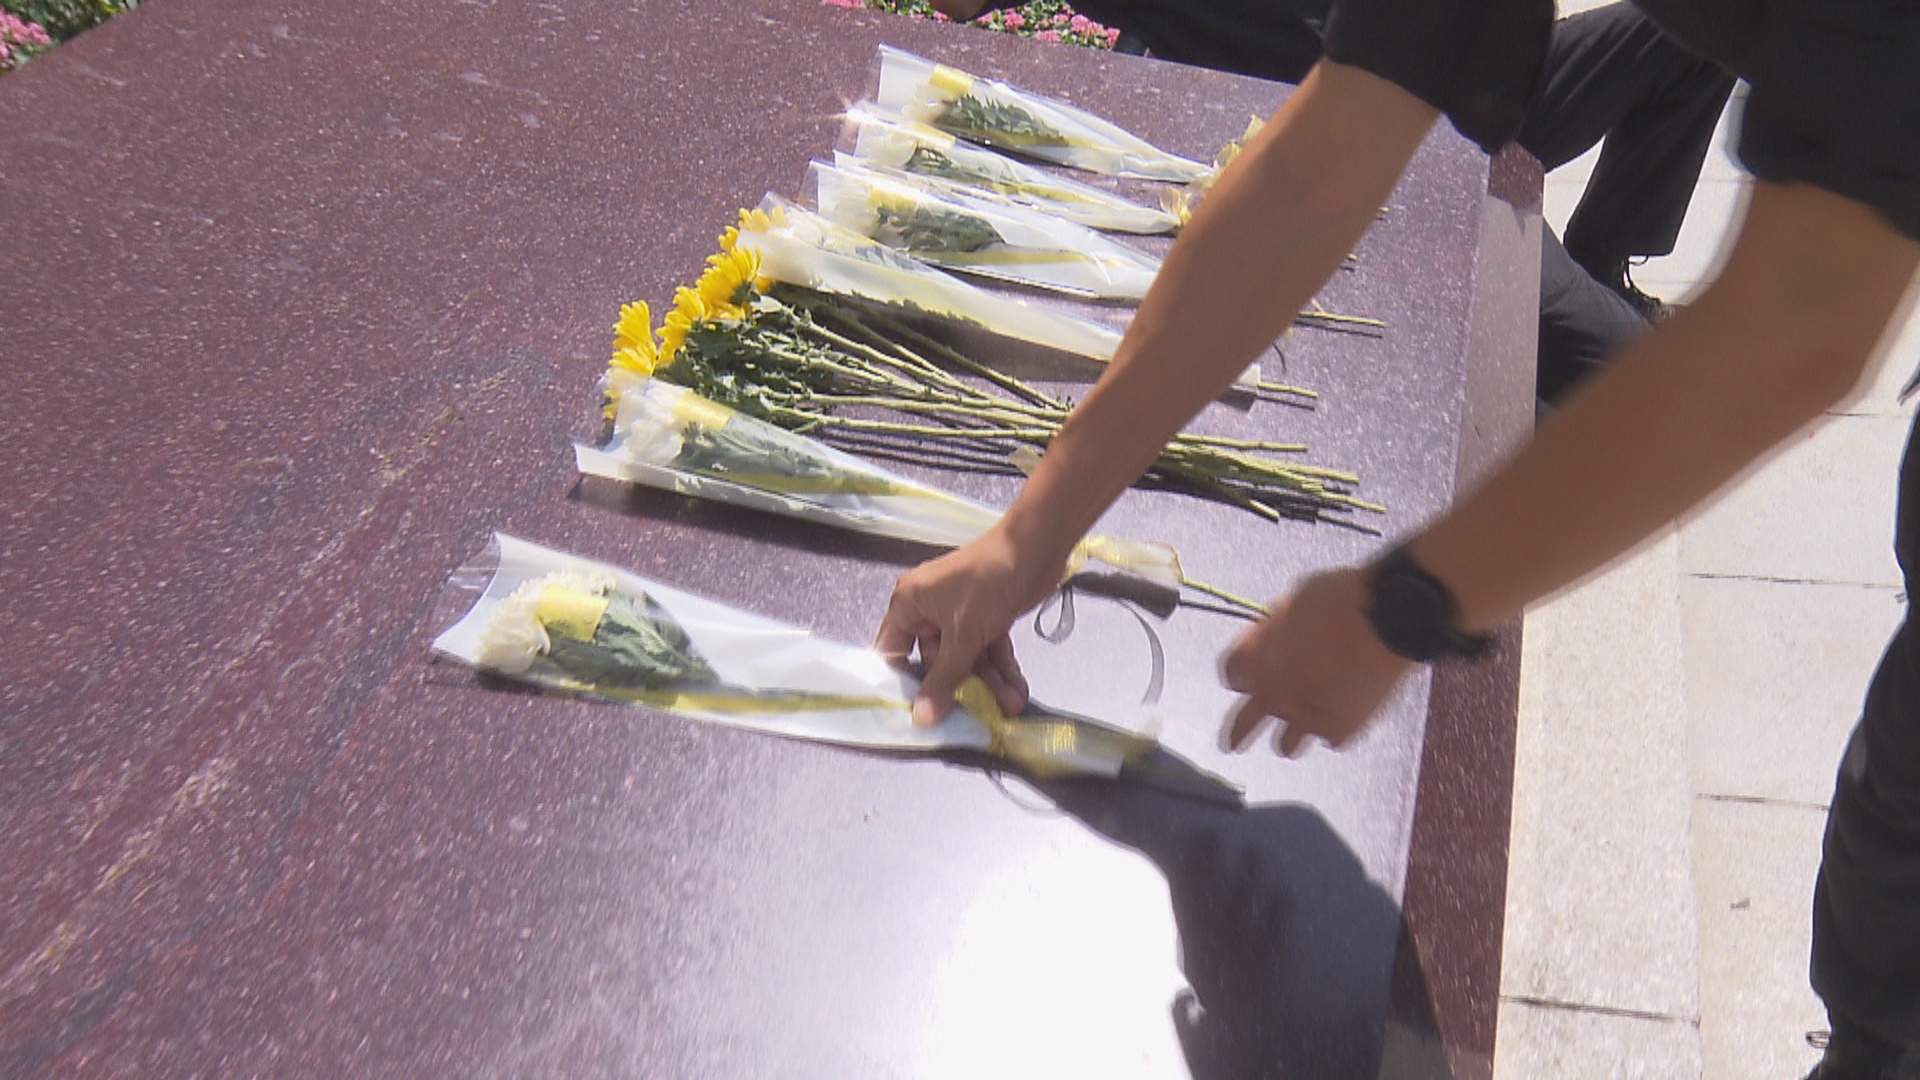 烈士纪念日丨今天鲜花献给英烈 永远铭记他们